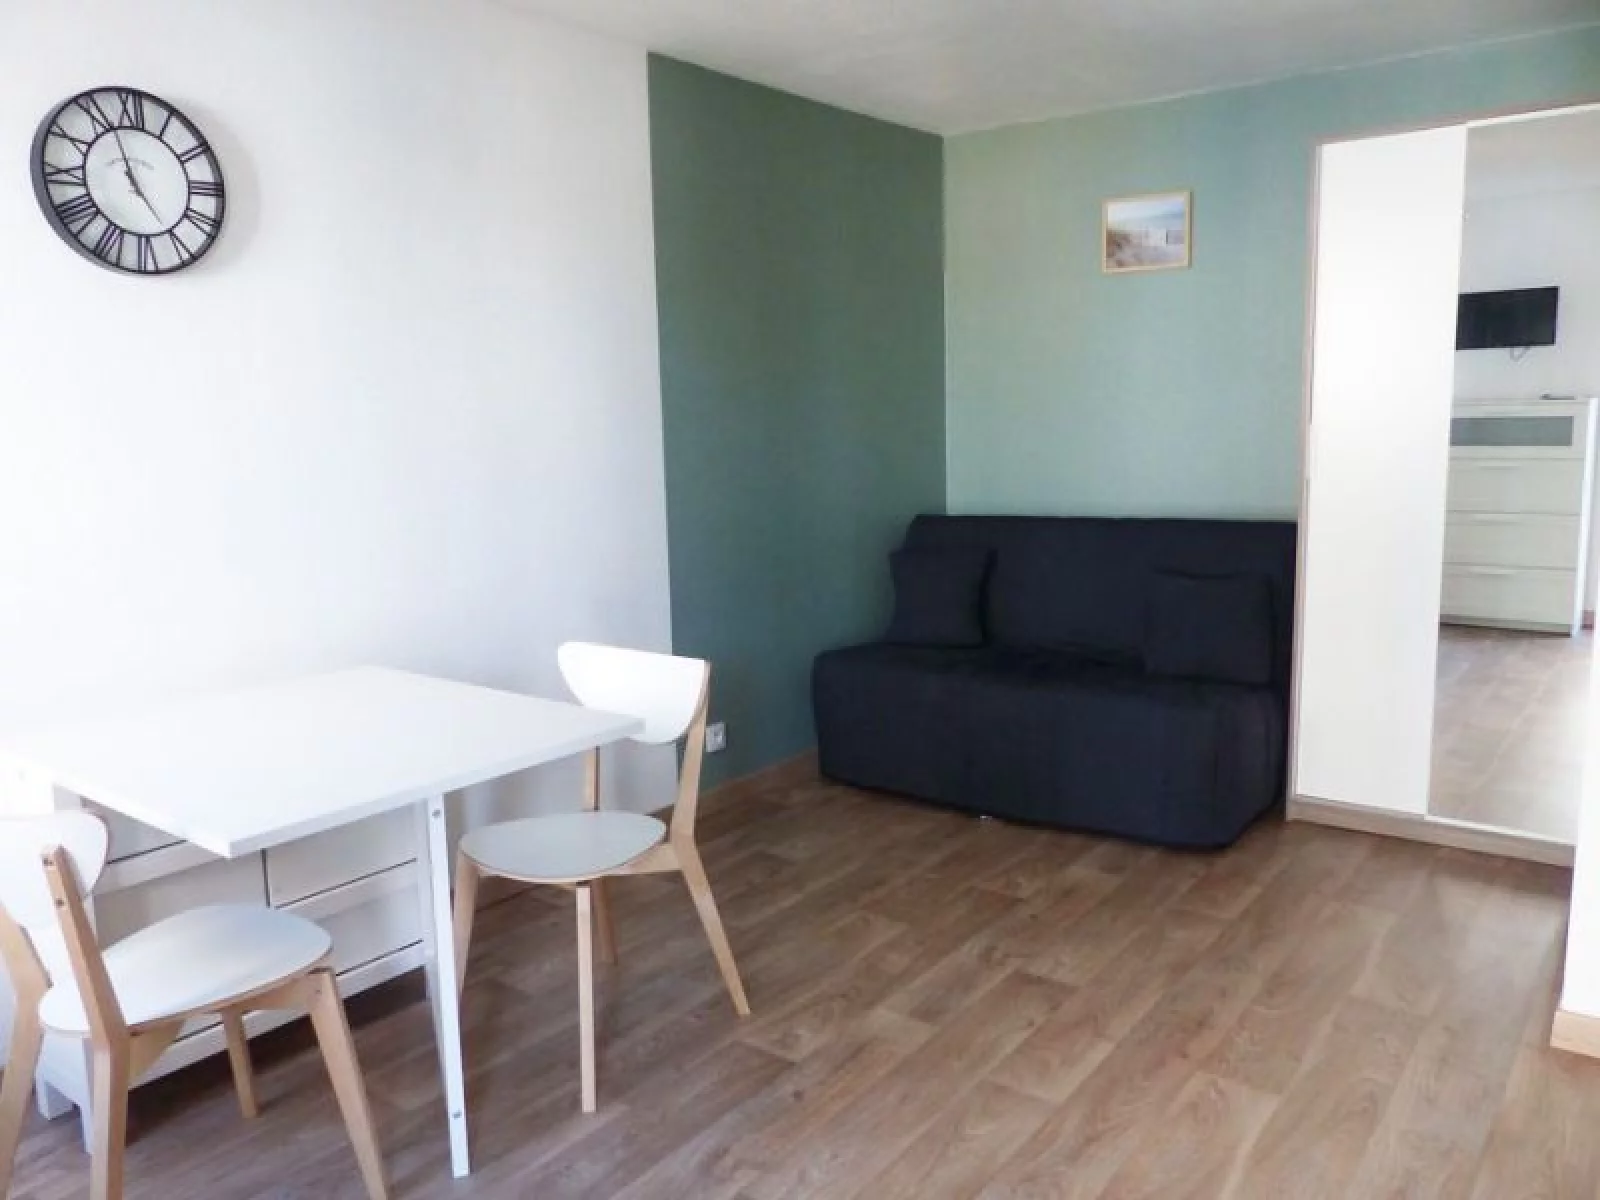 Location studio meublé 20 m² avec parking (La Rochelle)